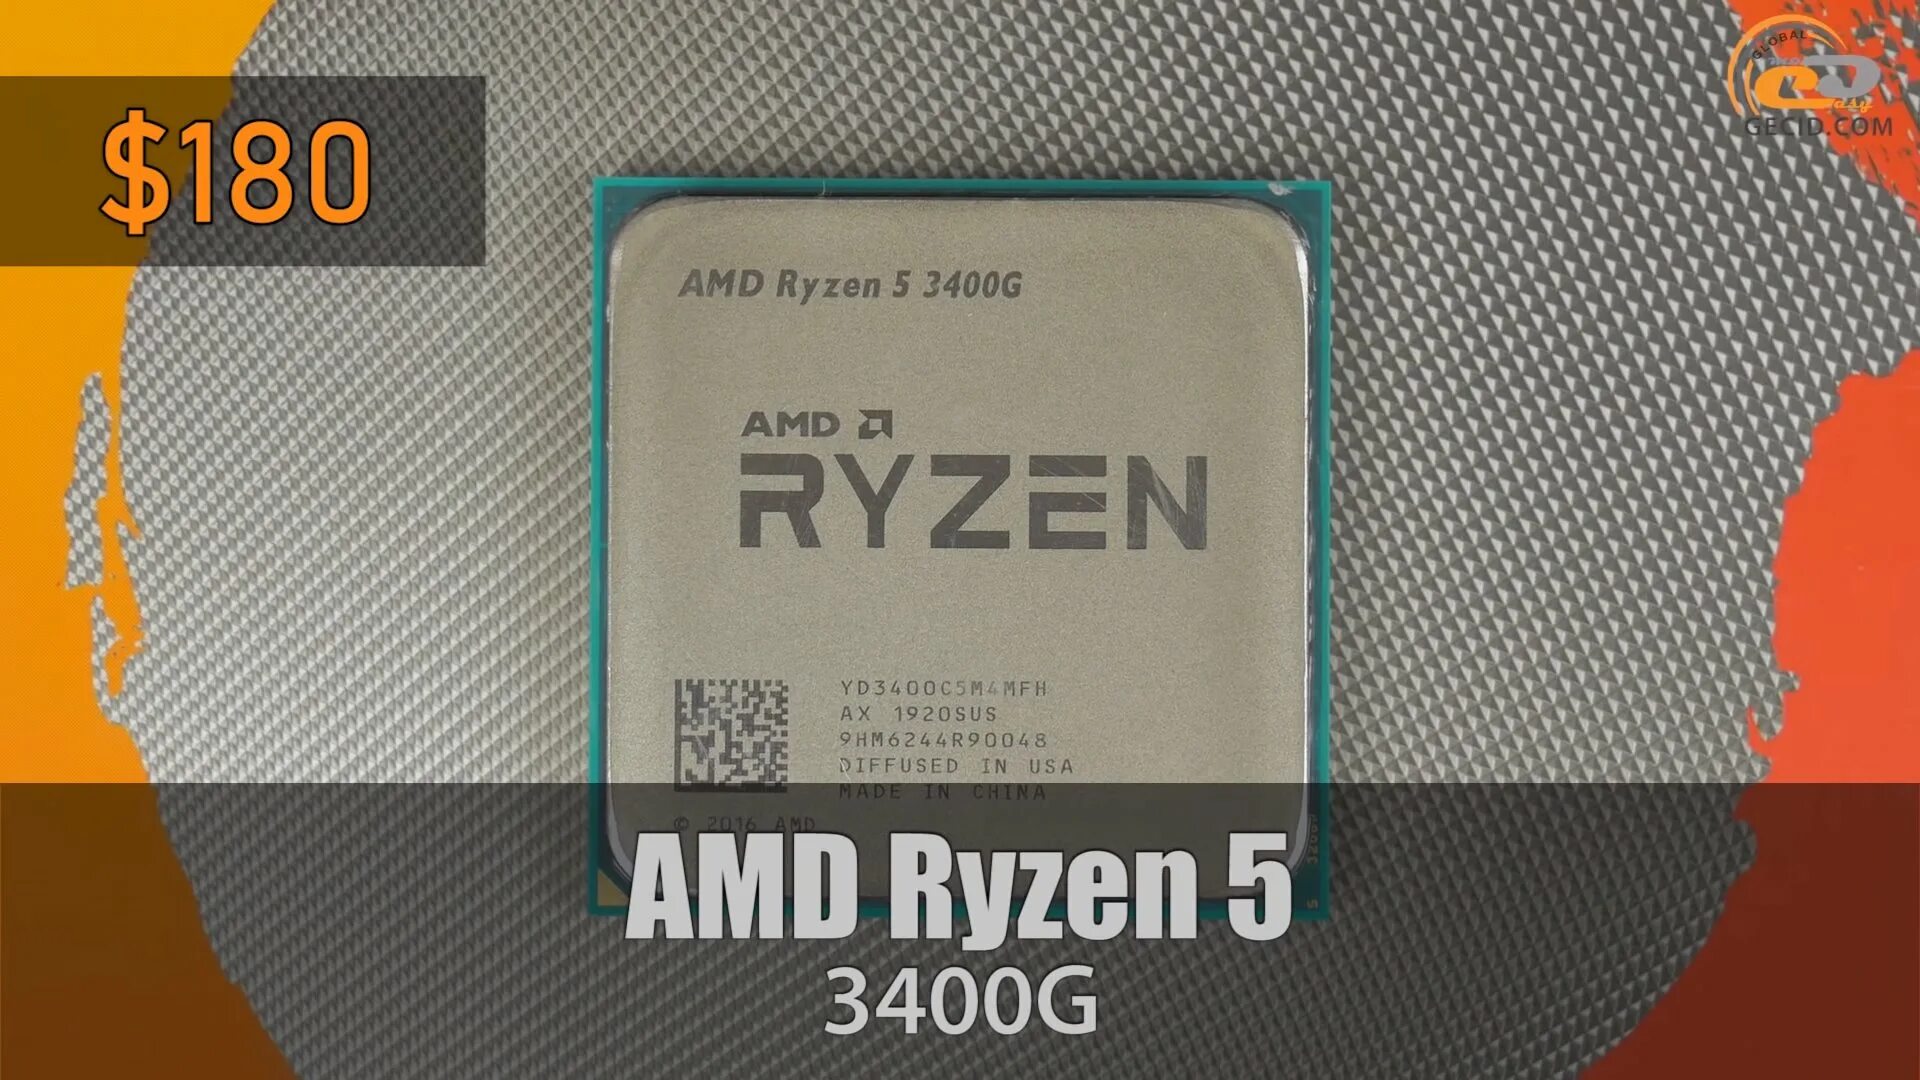 Райзен 5 3400g. Ryzen 3400g. R5 3400g. And Ryzen 5 3400g with Radeon Vega.